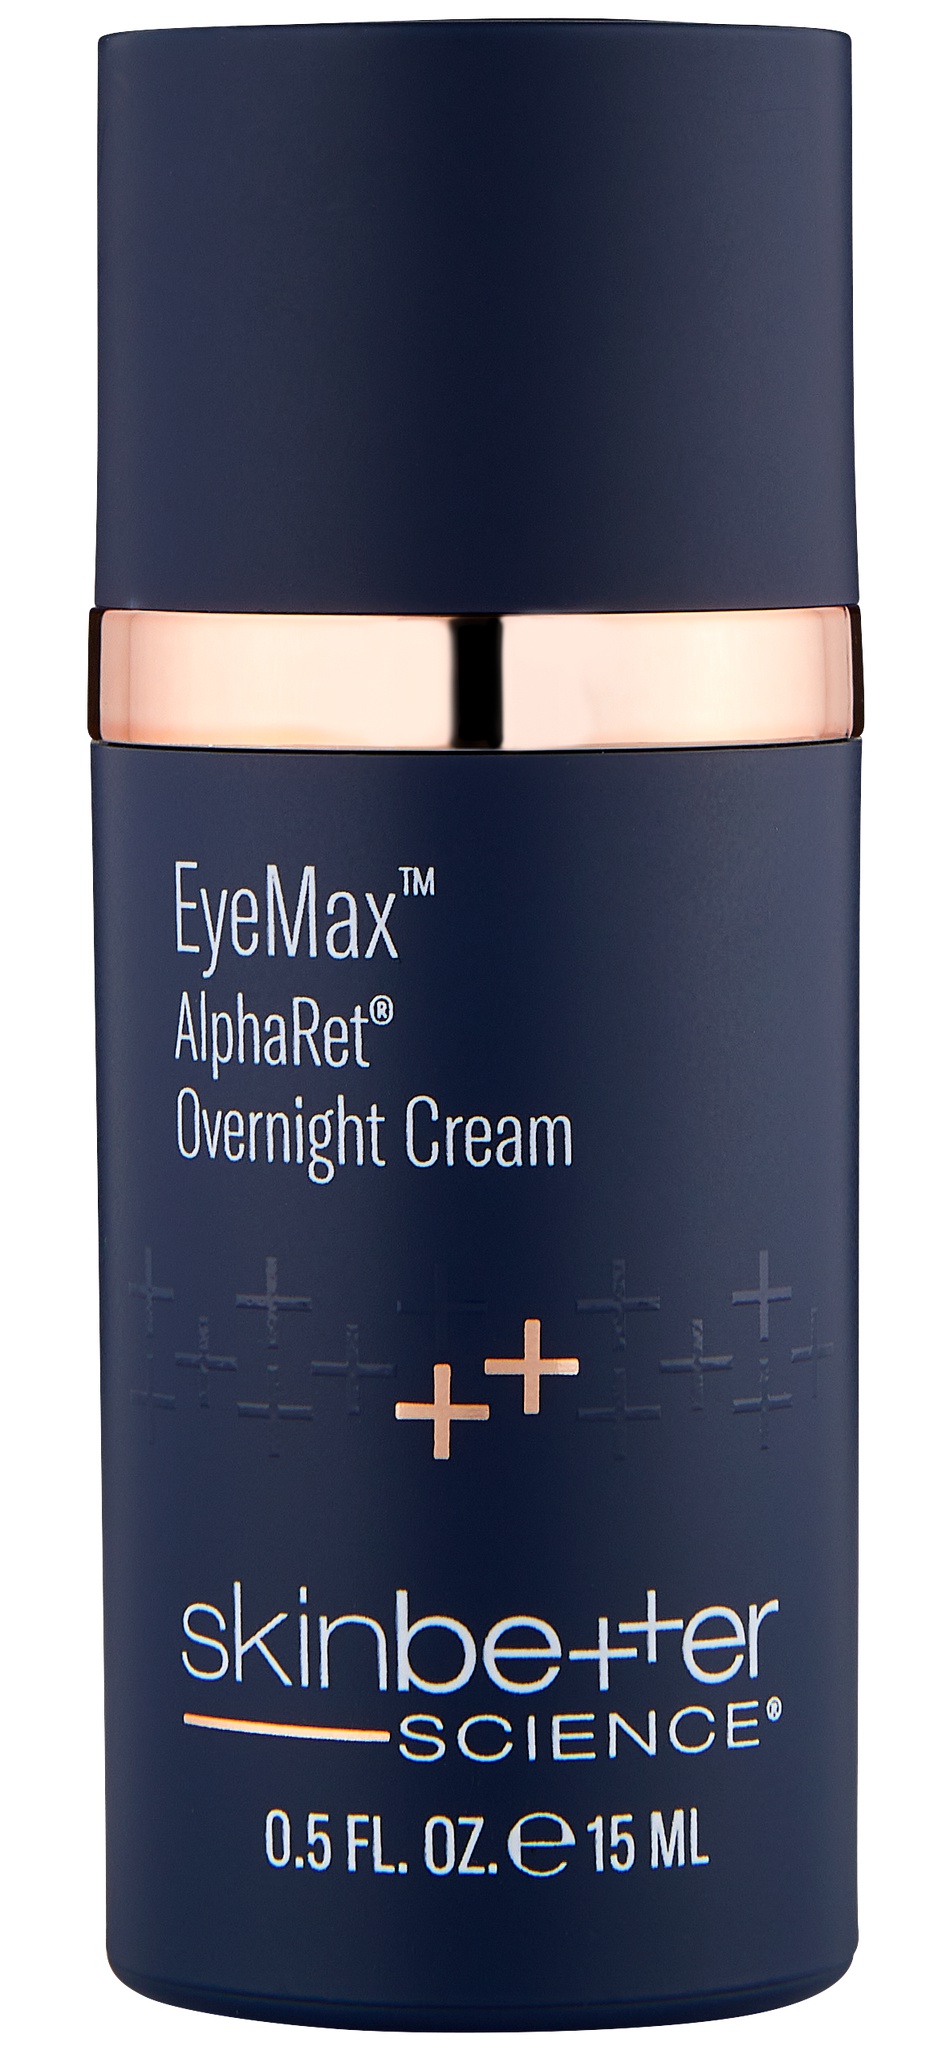 Skinbetter Science Eyemax Alpharet Overnight Cream